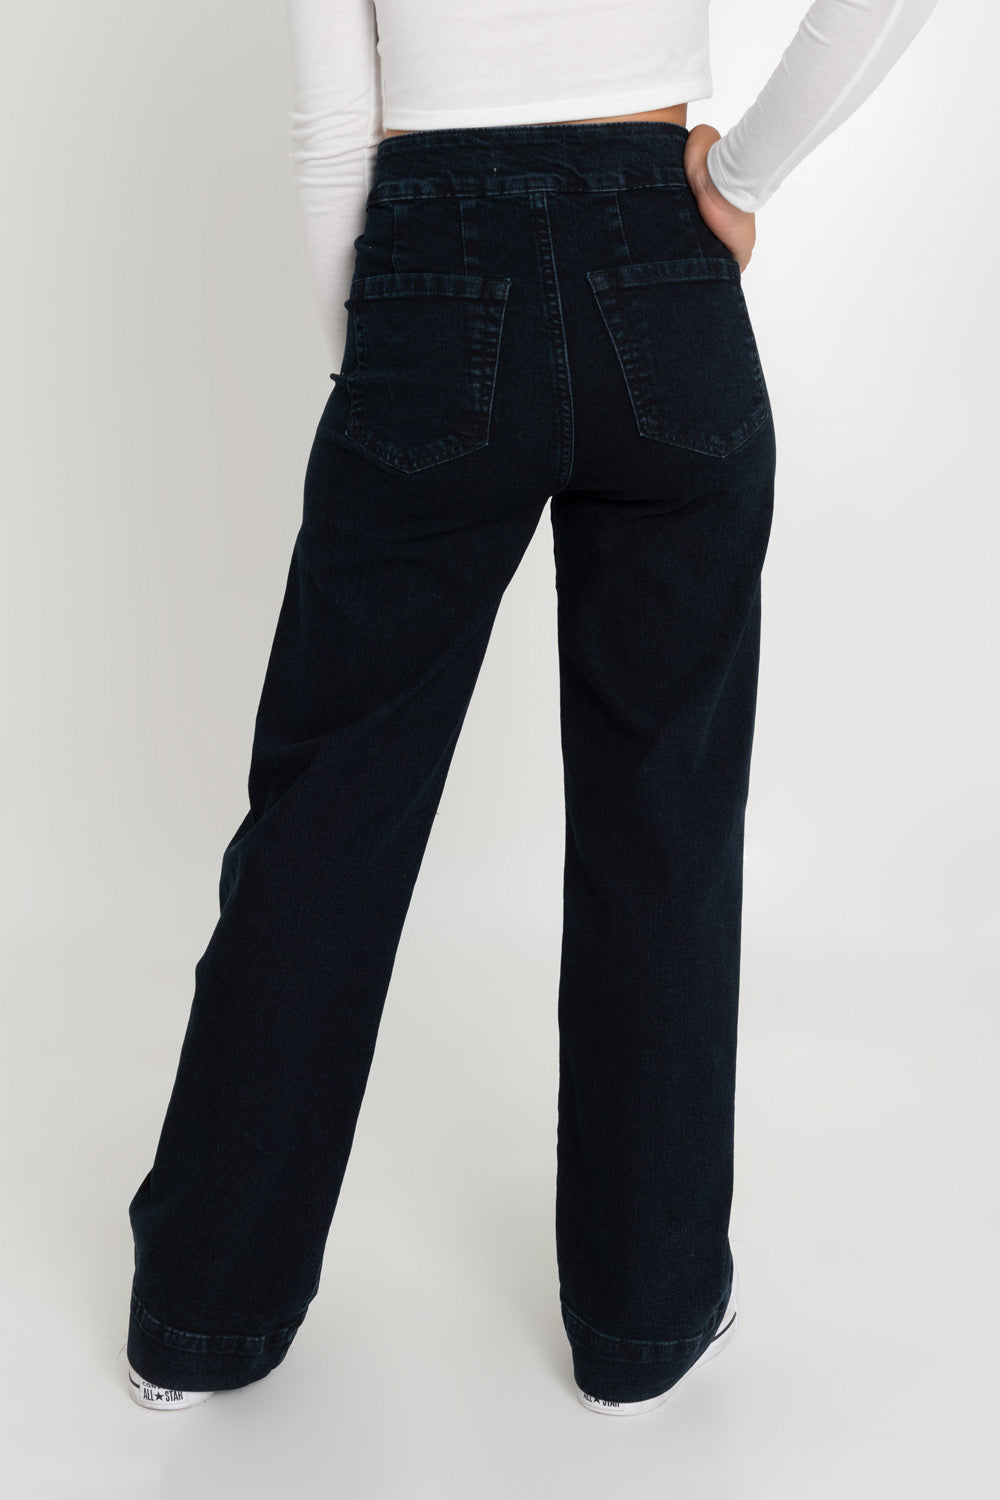 Pantalón marinero denim de fit flare, cintura alta con pretina, cierre frontal con botones en contraste y bolsillos traseros de parche. Detalle de raya frontal y pinzas posteriores.